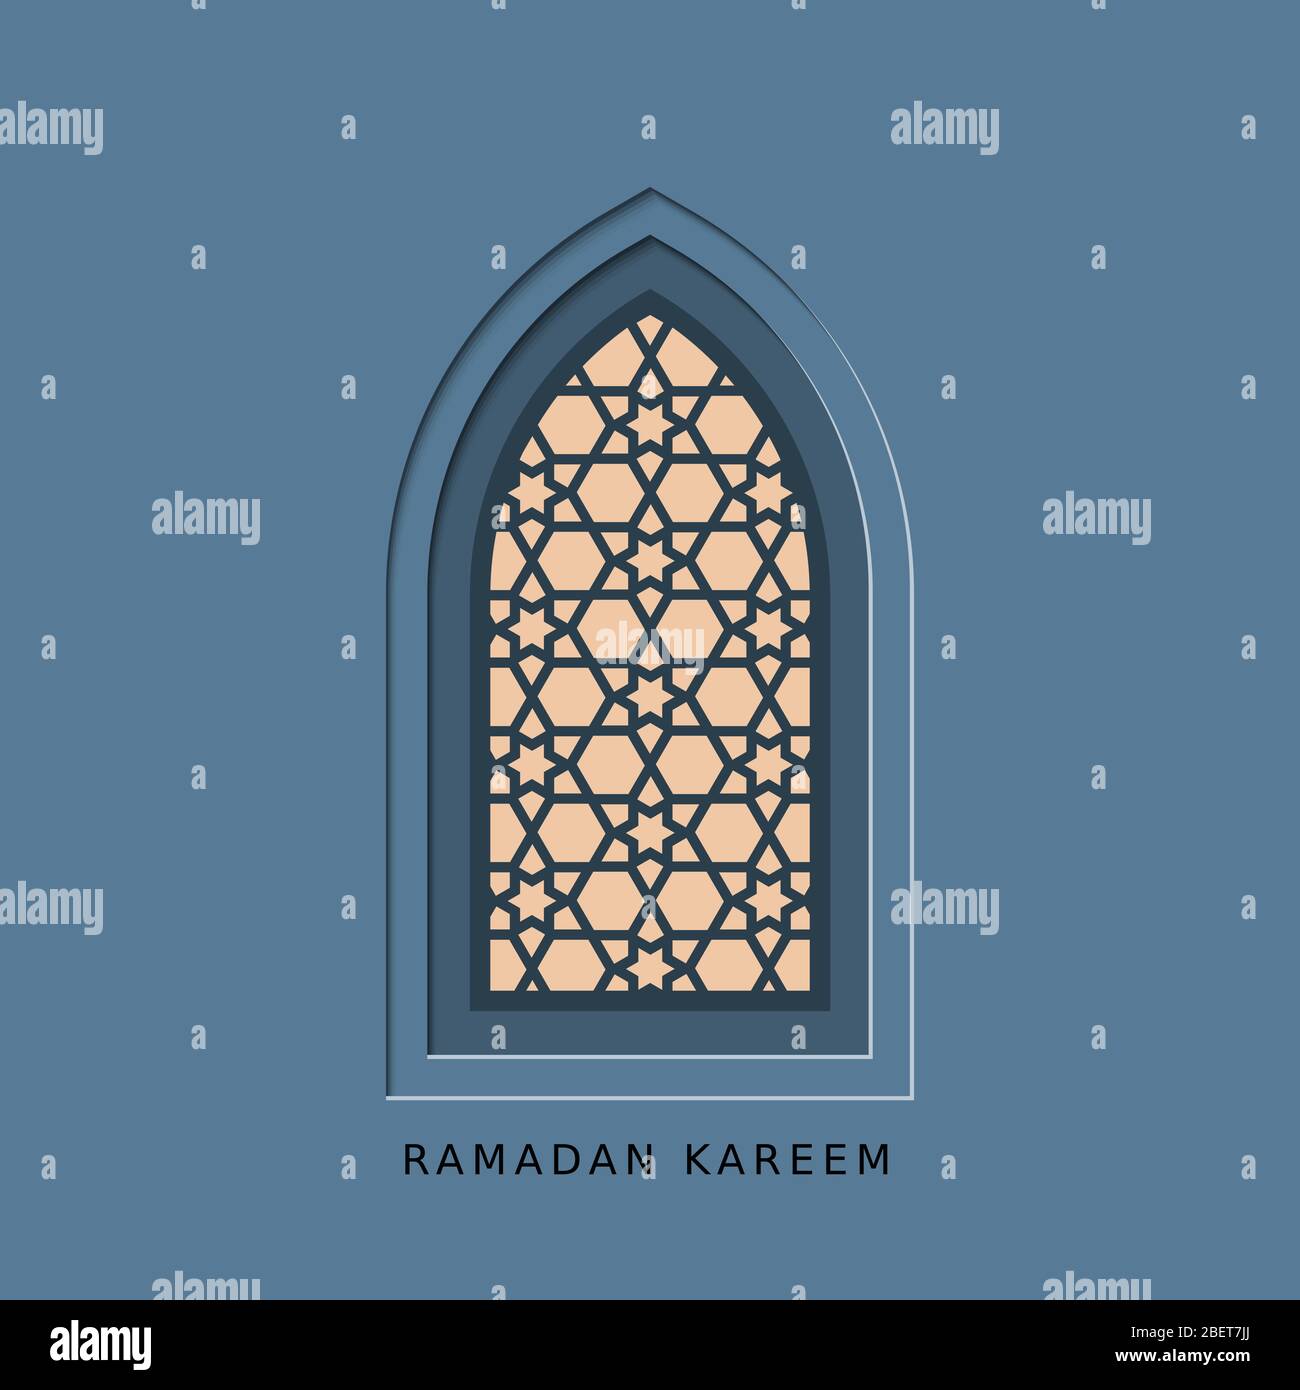 Ramadan kareem carta vettoriale con finestra arabica. Tagliare Illustrazione Vettoriale